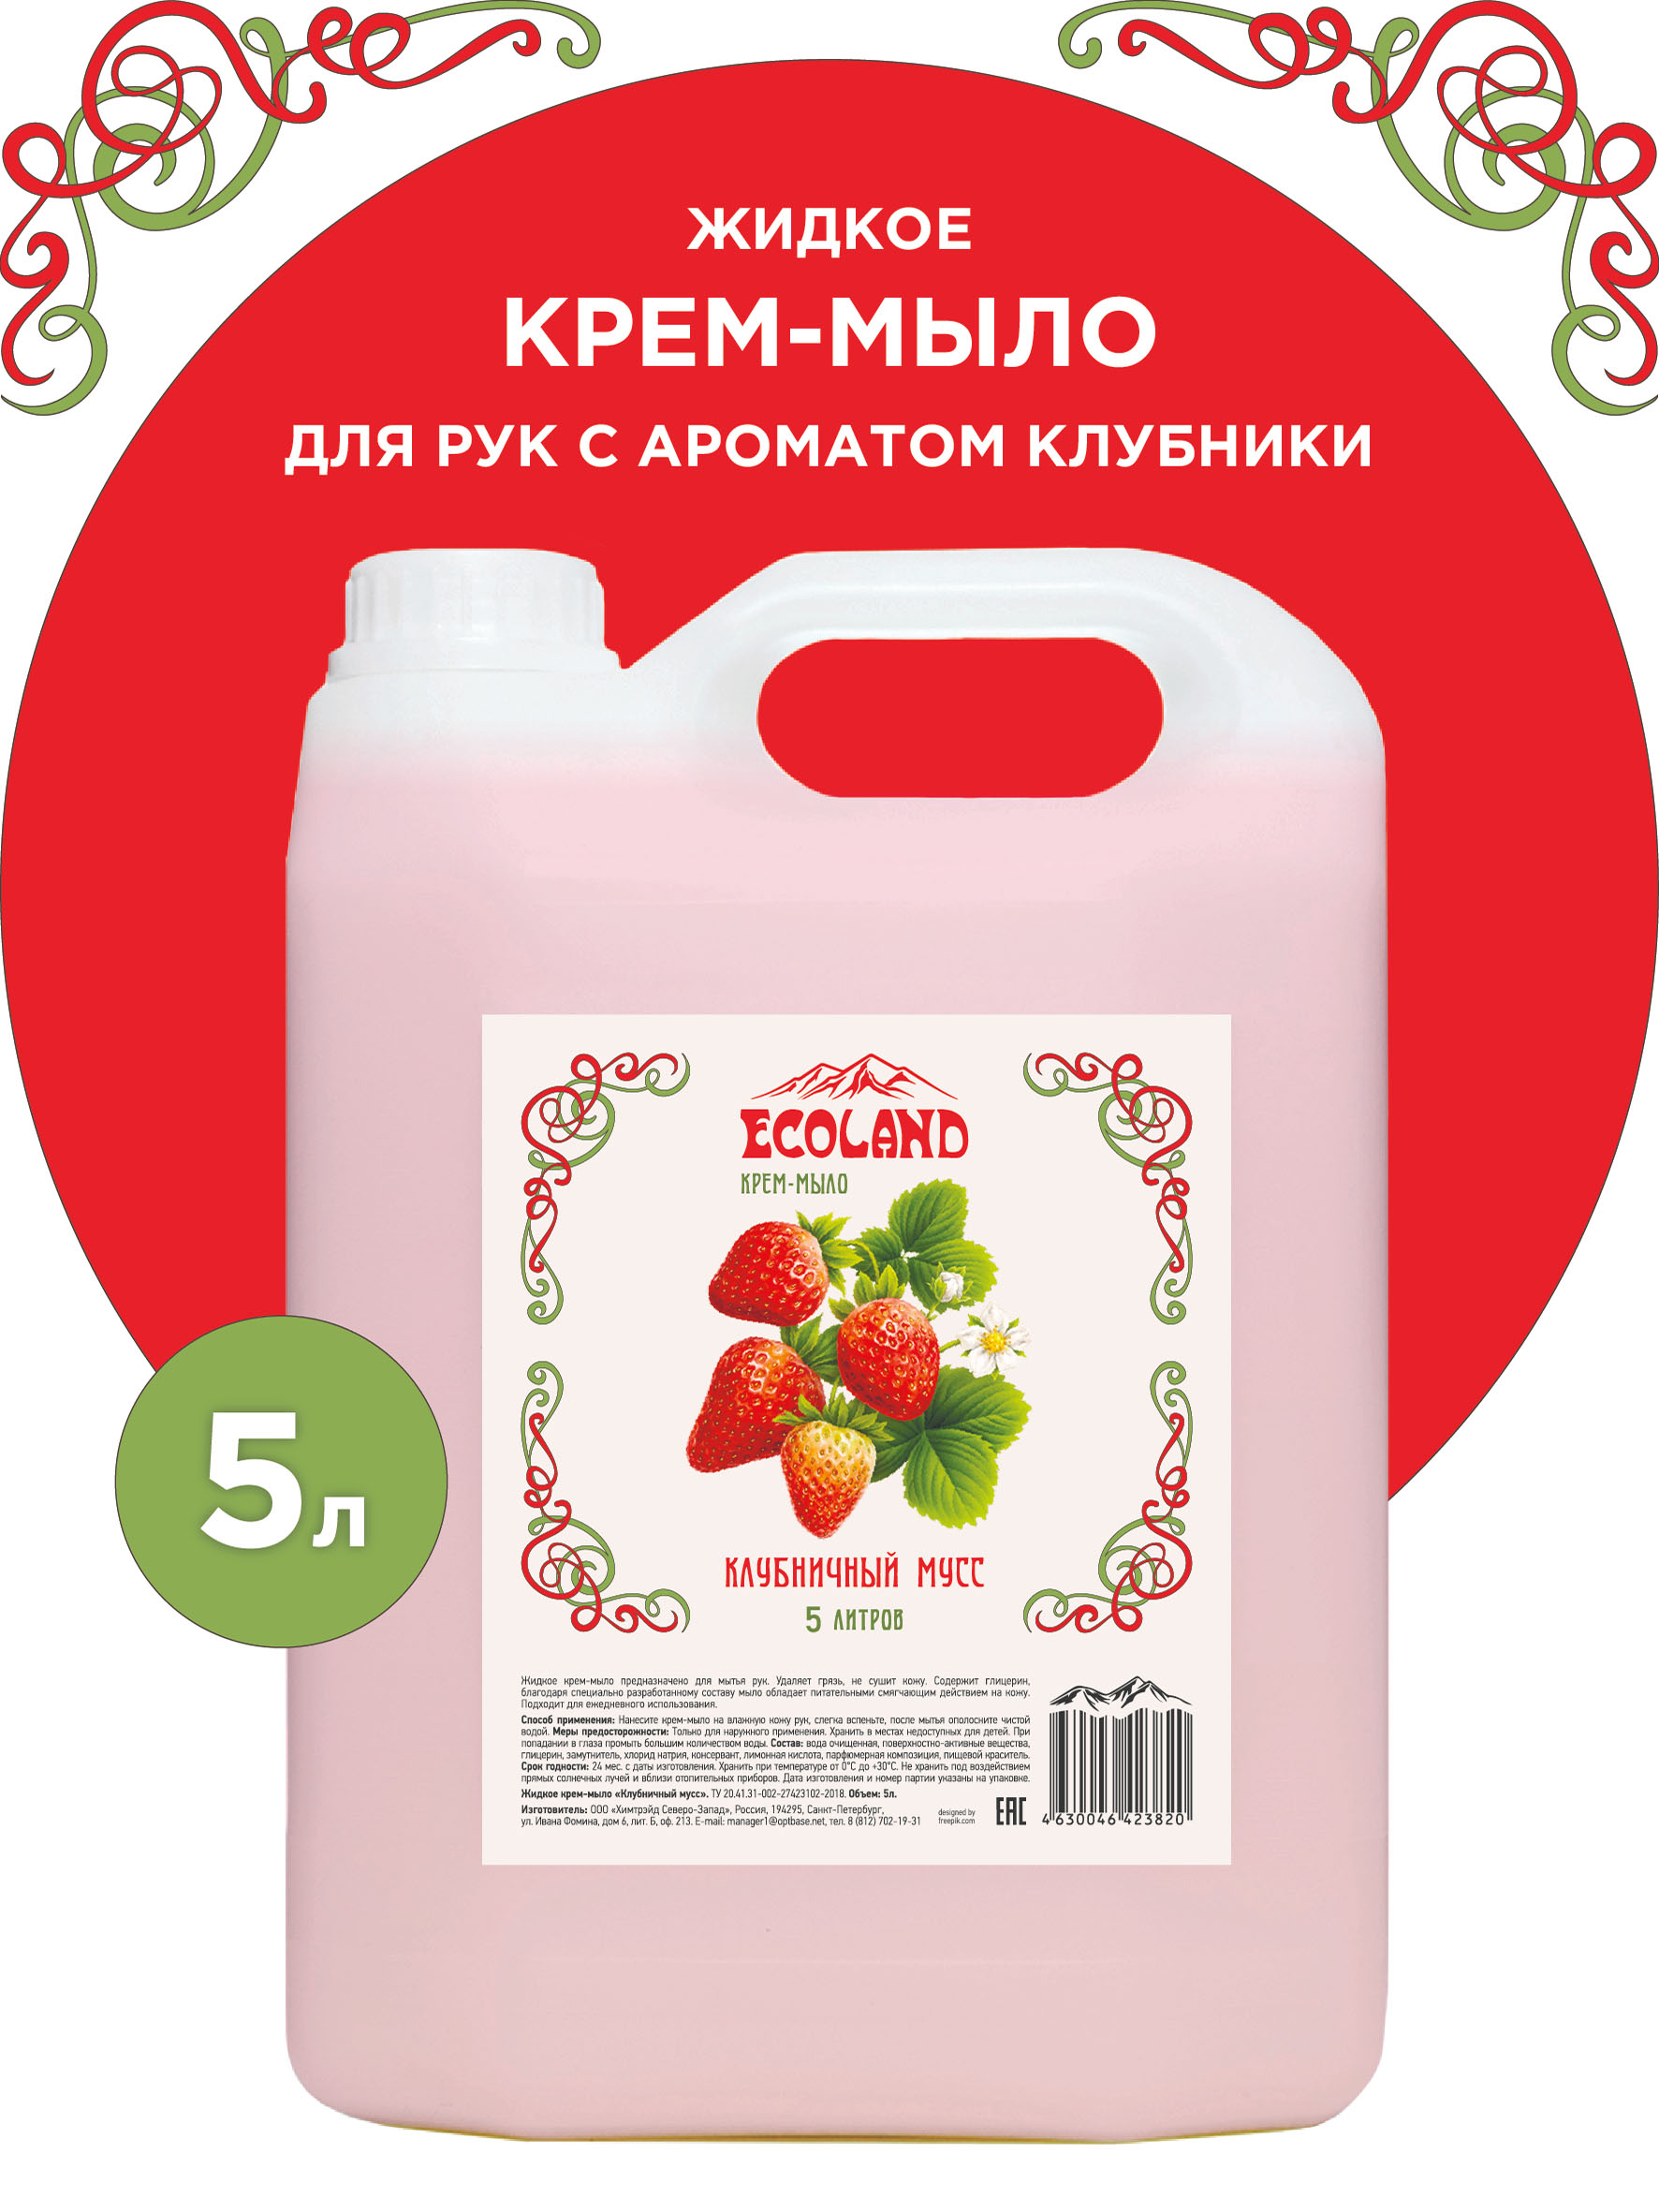 Жидкое крем-мыло Клубничный мусс ТМ EcoLand 5 л